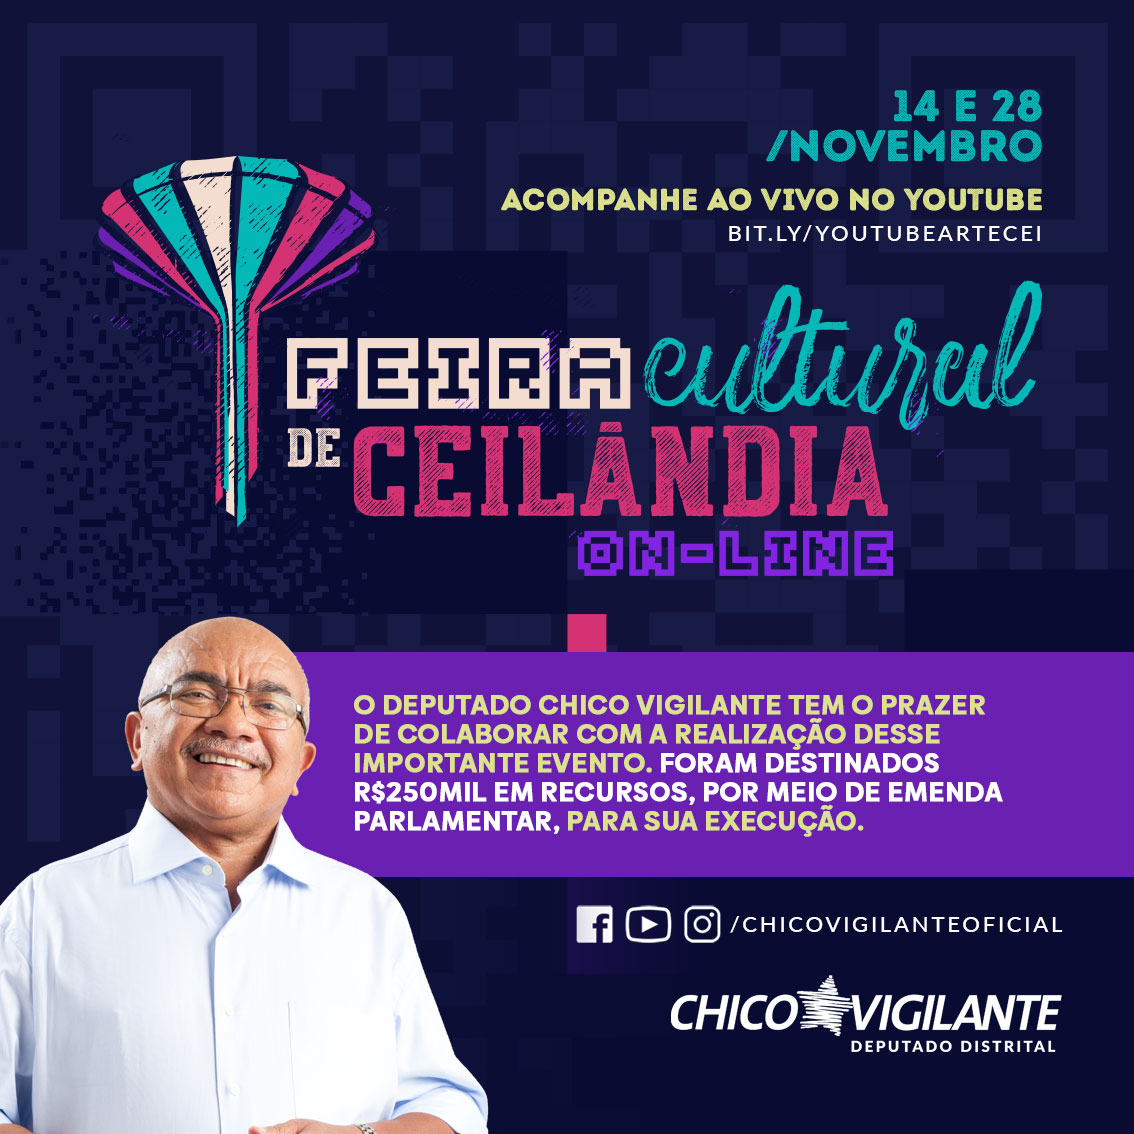 Hoje, 28 de novembro, a Feira Cultural de Ceilândia finaliza sua 6ª edição em formato on-line